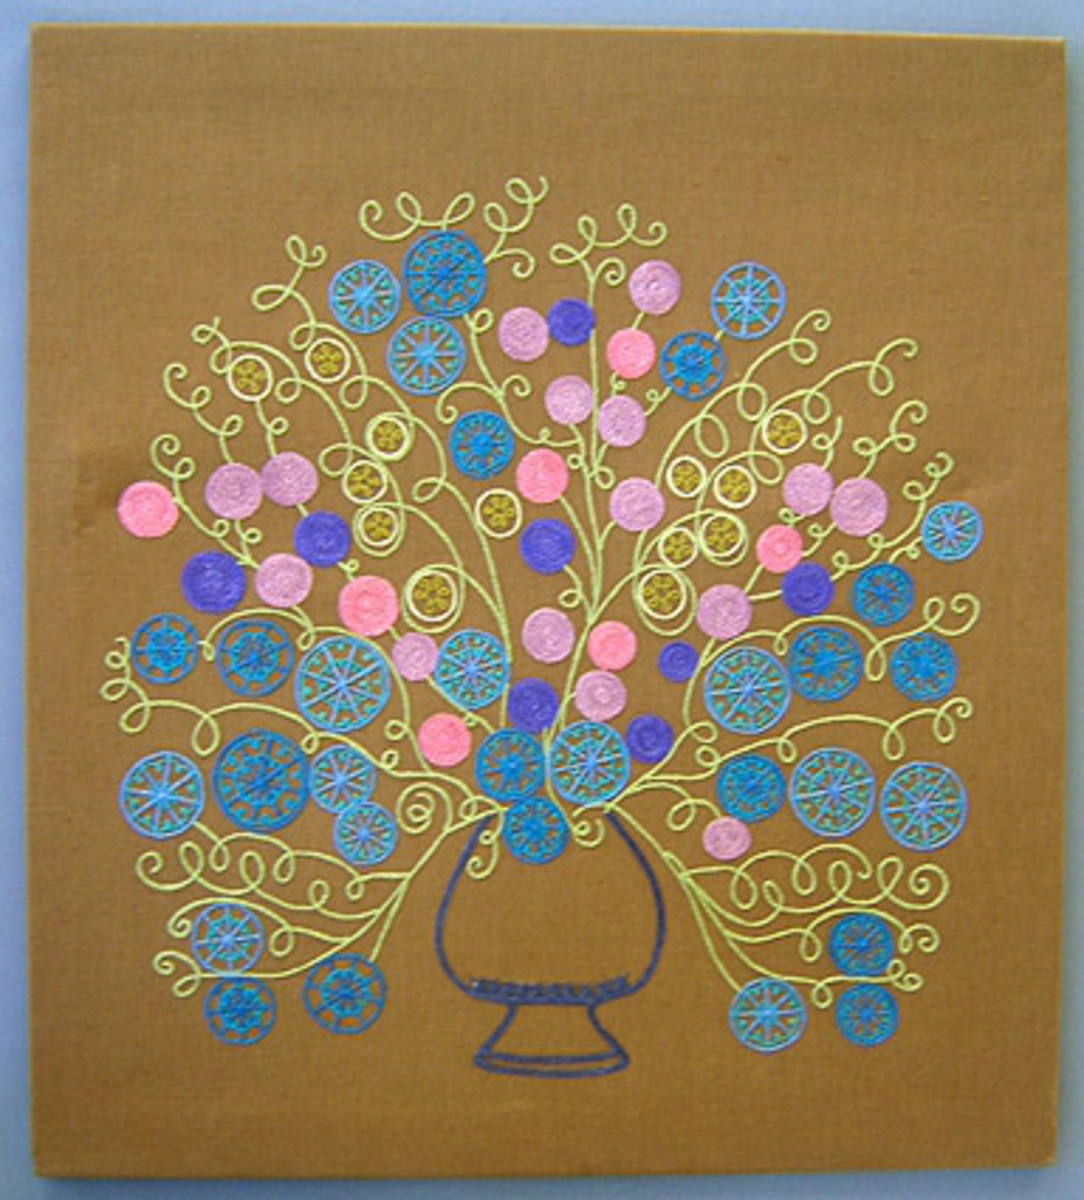 Bonad/broderad tavla. Modellnamn "Sofi". Mönstret komponerat av Anna Hådell 1977.
WLHF 995:1 - Tavla i brunt linnetyg med broderi i kulört lingarn utfört i kedjesöm. Mönster i form av en blomsterurna i blått med stiliserade blommor i blå, ljusgröna och rosa nyanser. Broderiet är fäst på en spännram med lim och häftklammer.
WLHF 995:2 - Provlapp. Brunt bottentyg i lin med påbörjat broderi i gråblått, blått, turkos, grönt och rosalila. Mått 115x270 mm.